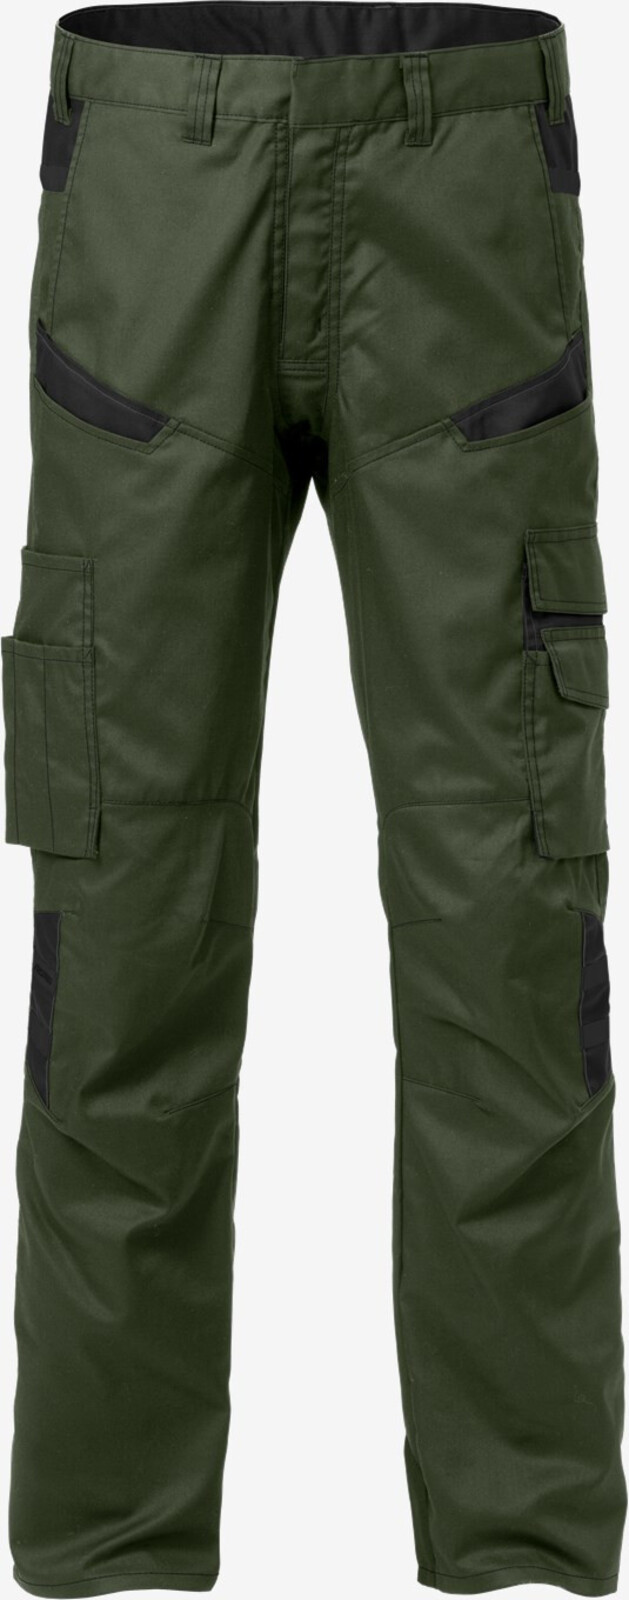 Pánske pracovné nohavice Fristads 2552 STF - veľkosť: C58, farba: khaki/čierna